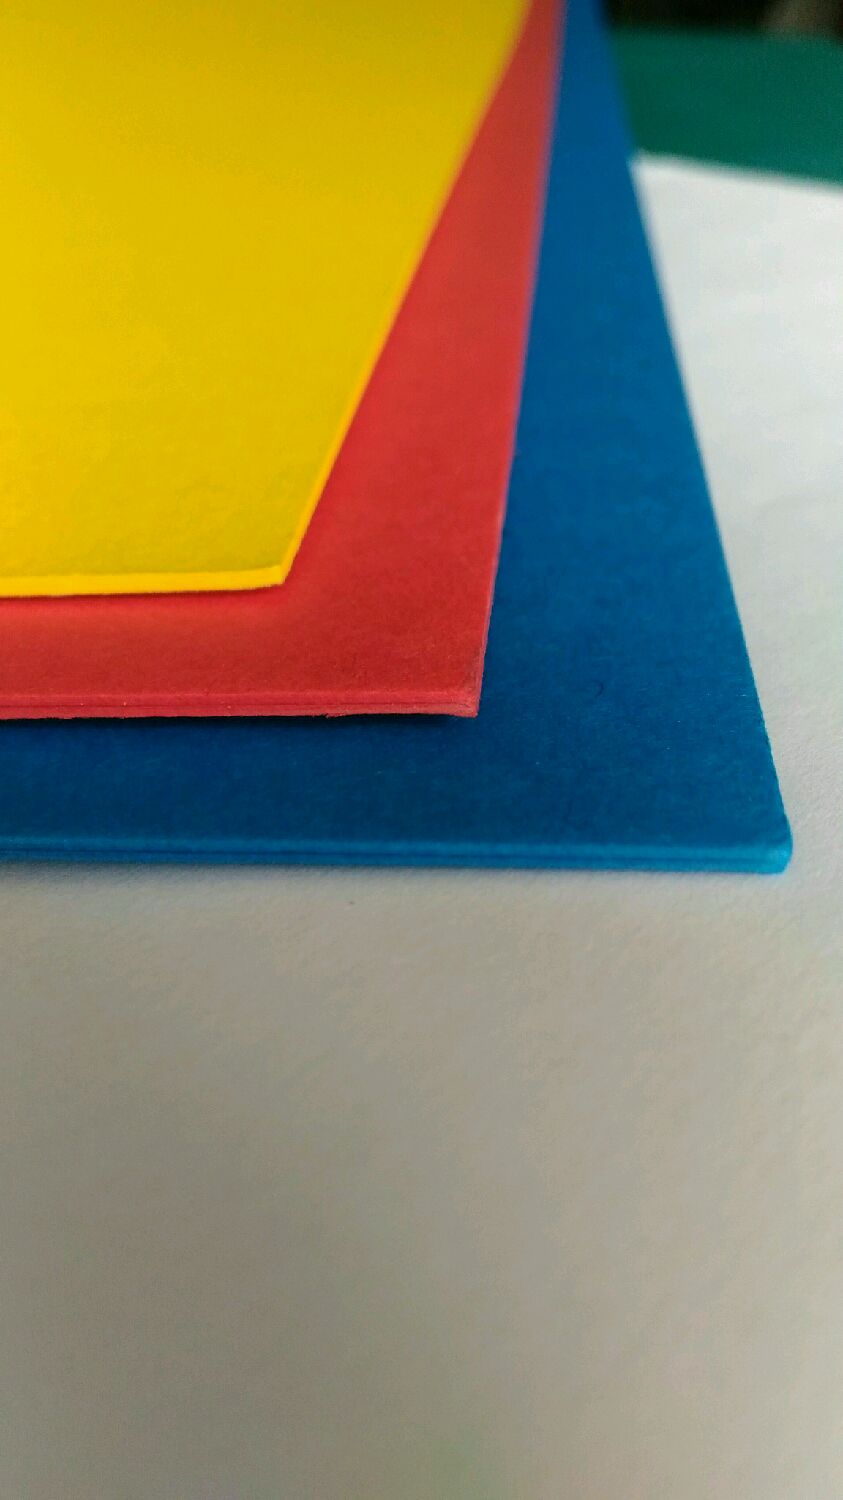 Цветная бумага и картон для квиллинга, оригами и скрапбукинга